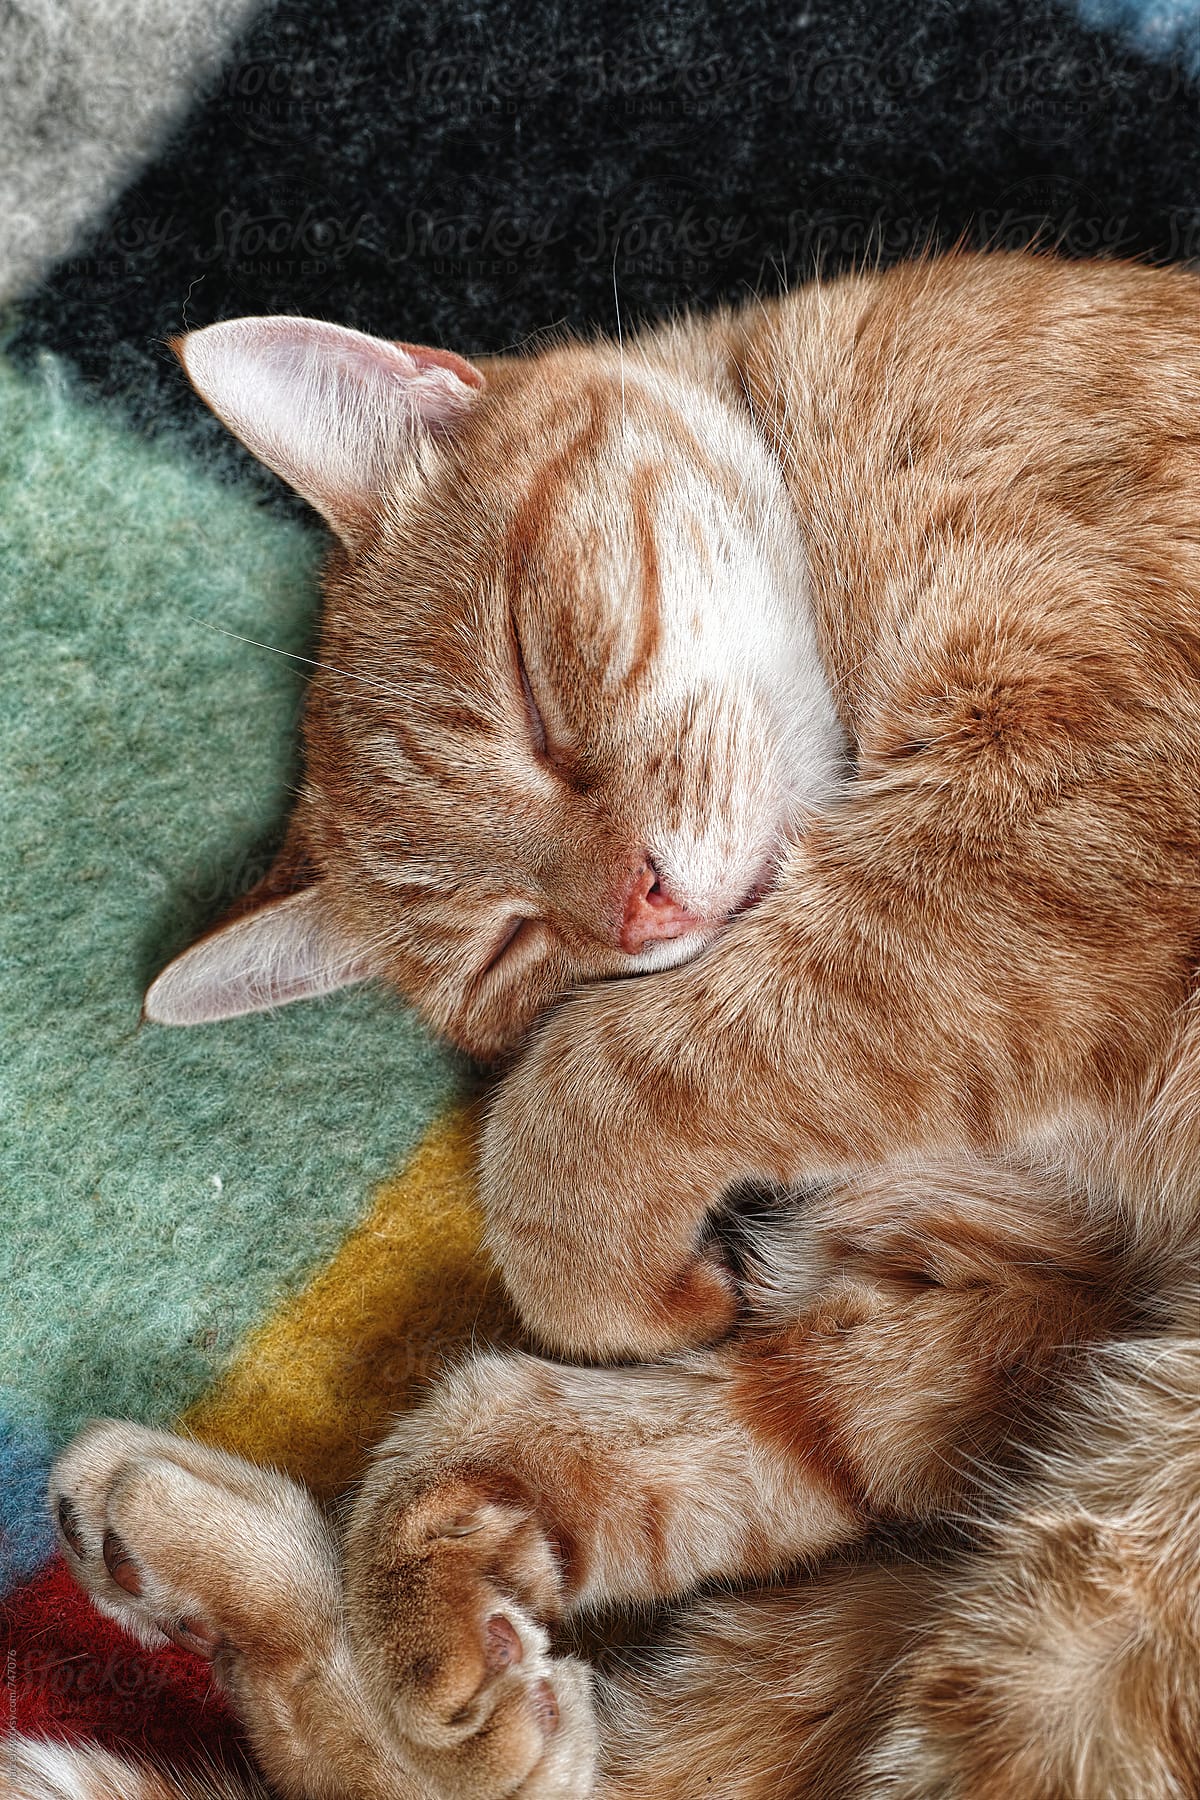 Ginger tom cat sleeping on a blanket